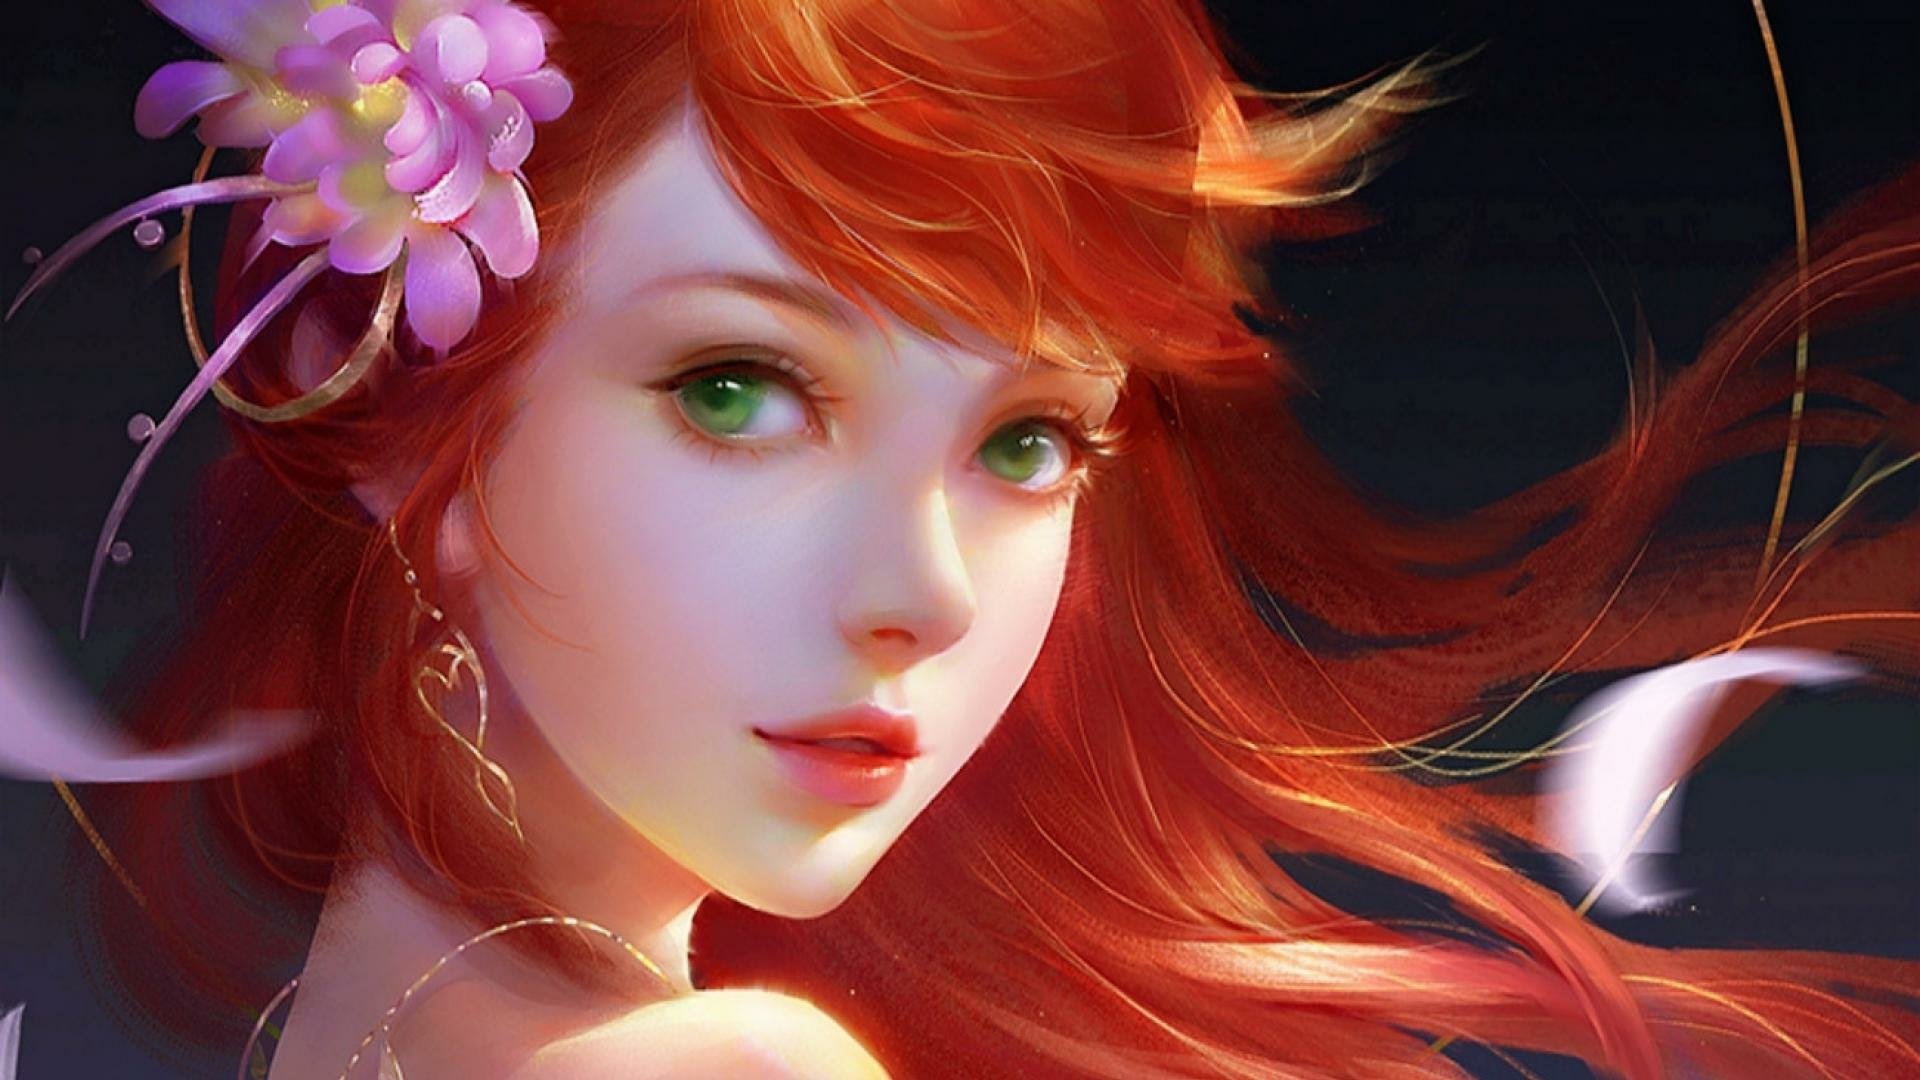 Fantasy Redhead with Green Eyes